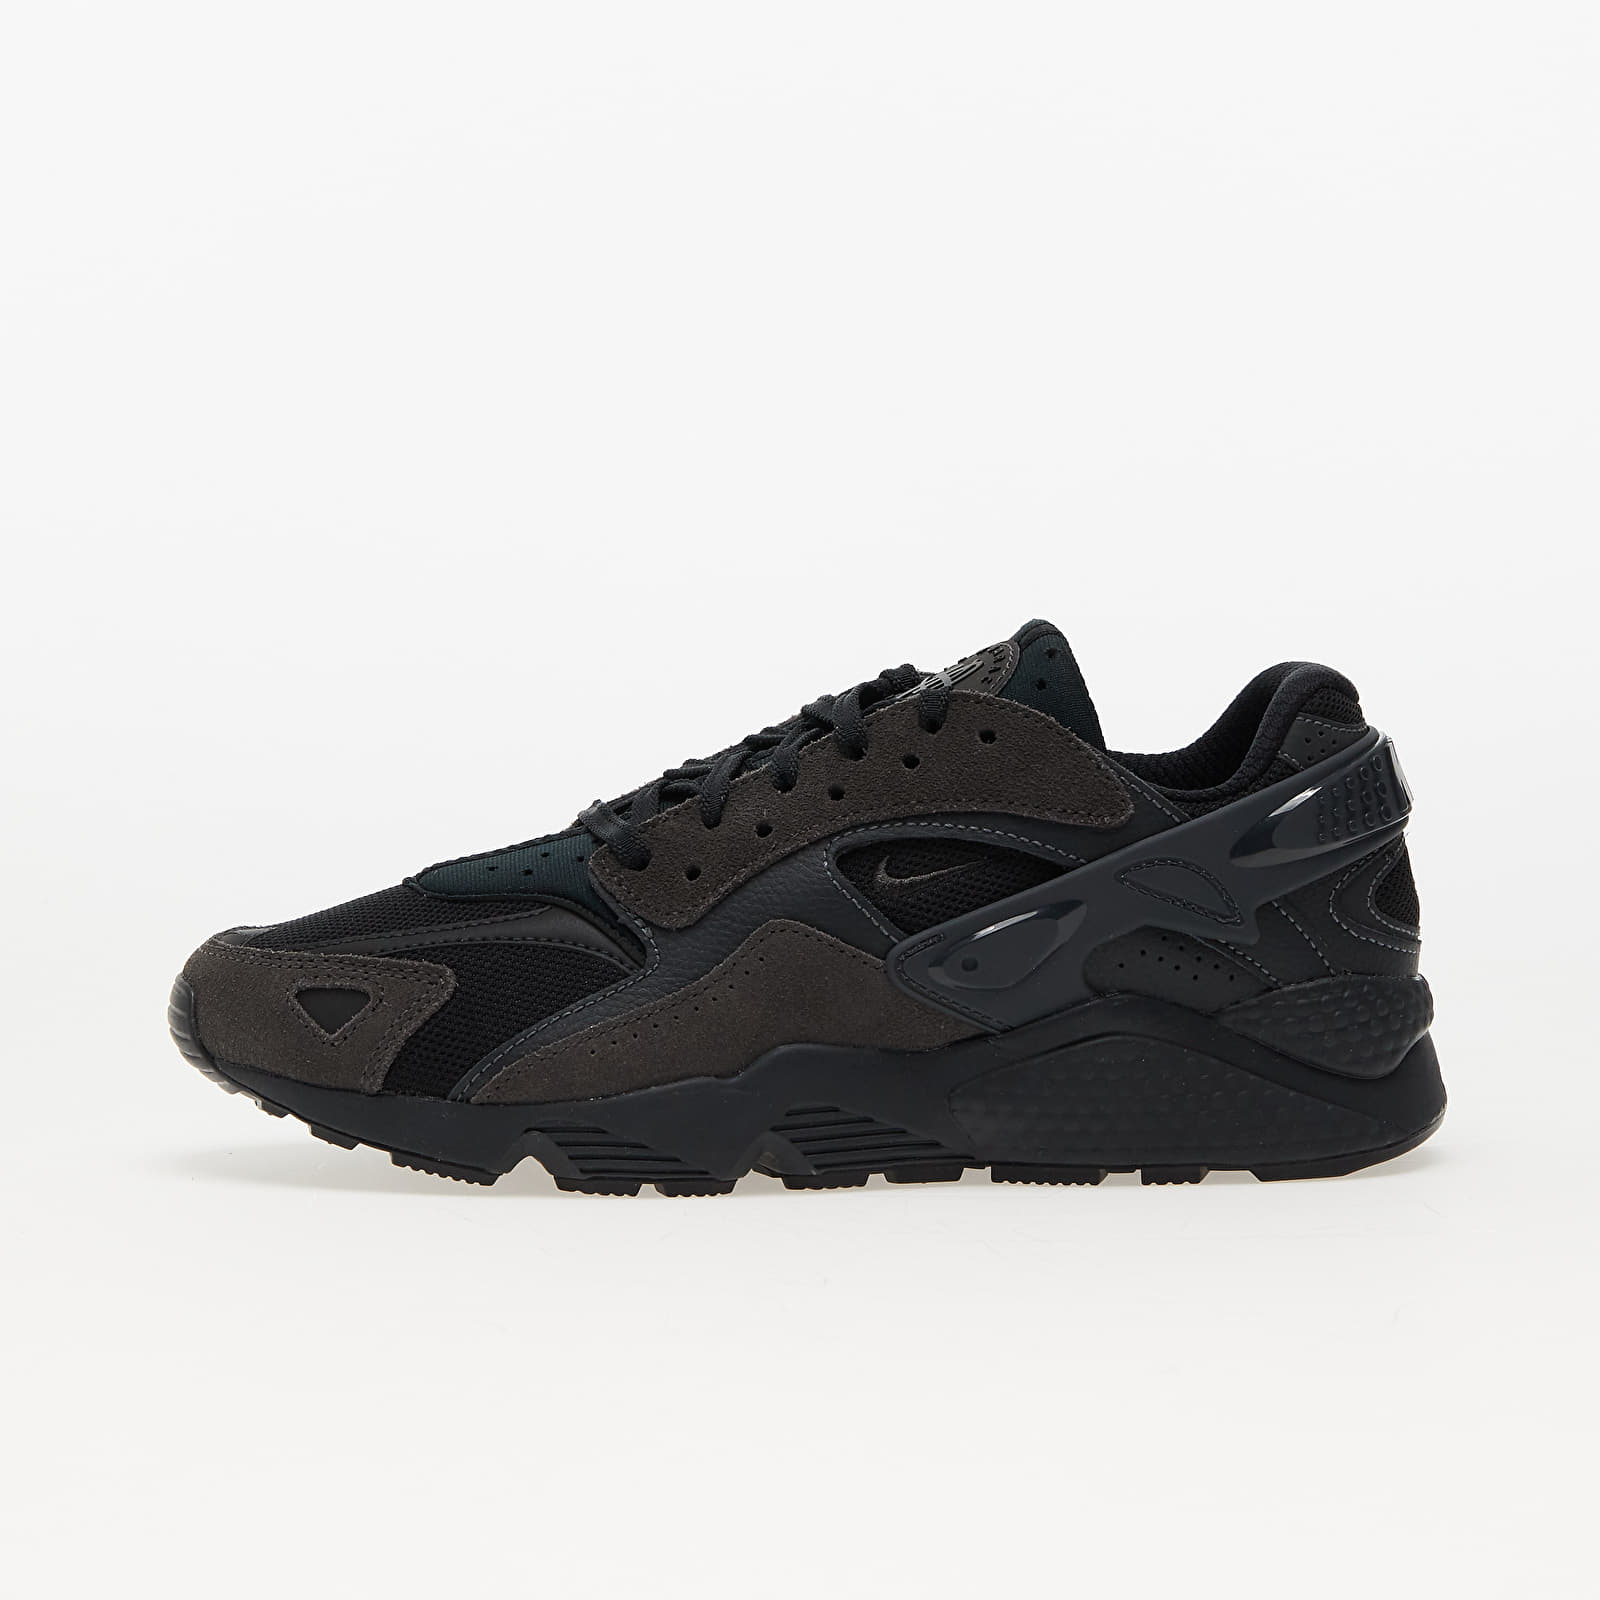 Încălțăminte și sneakerși pentru bărbați Nike Air Huarache Runner Black/ Medium Ash-Anthracite